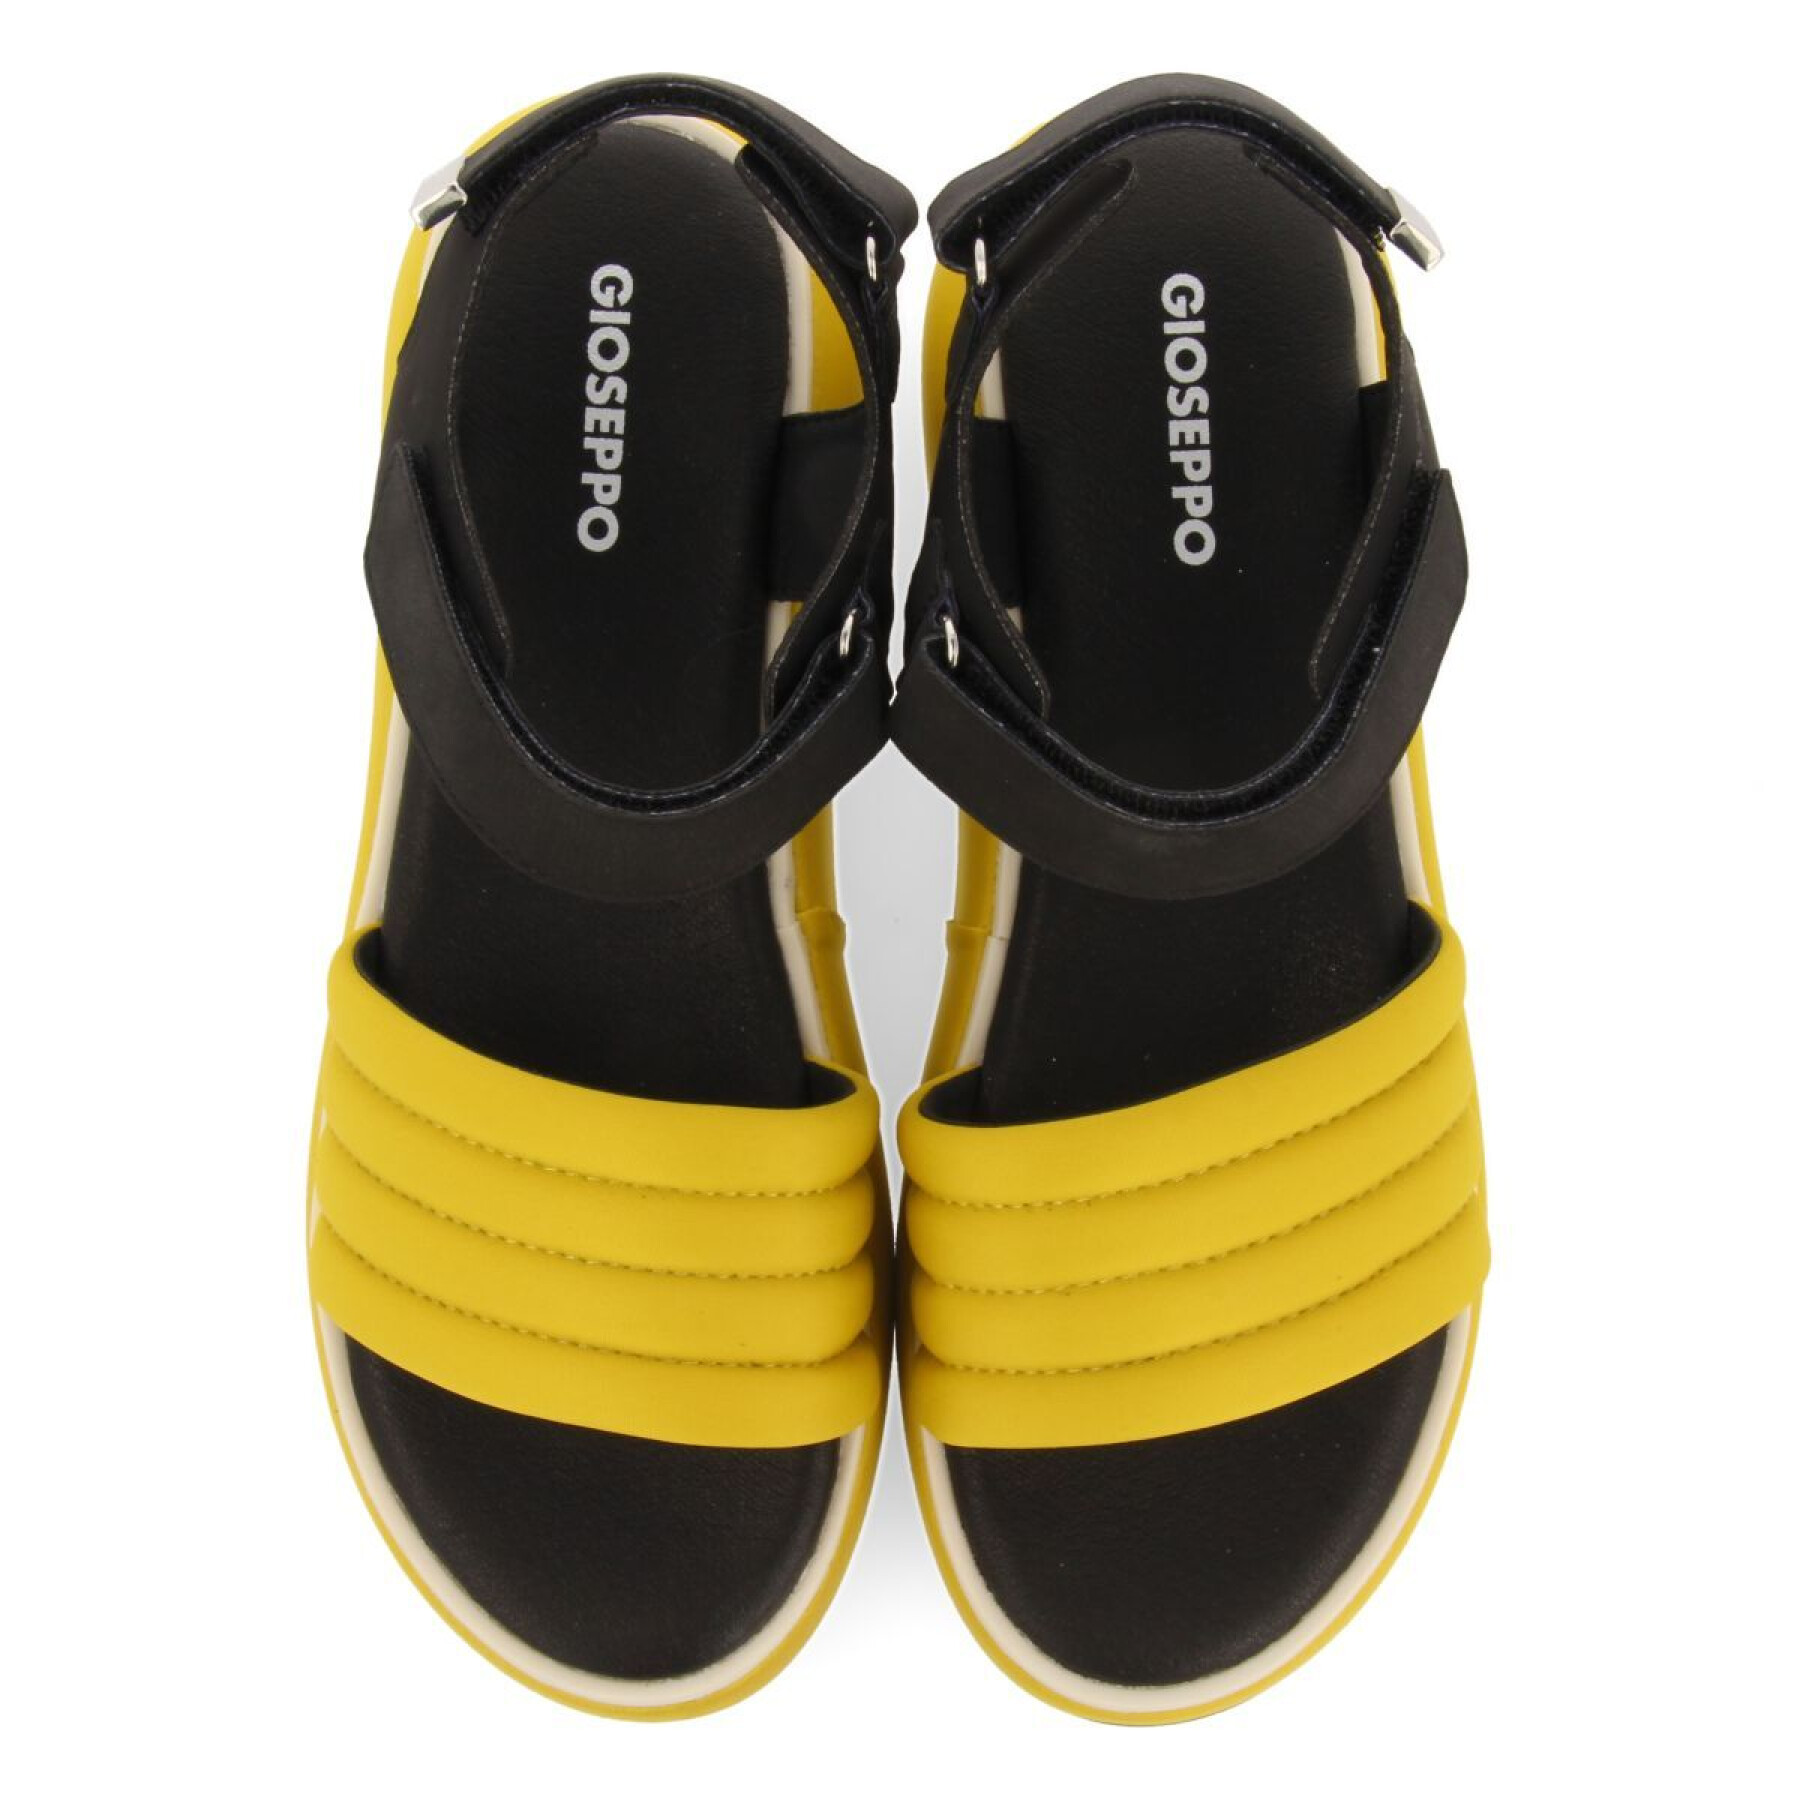 Women's sandals Gioseppo Cheval